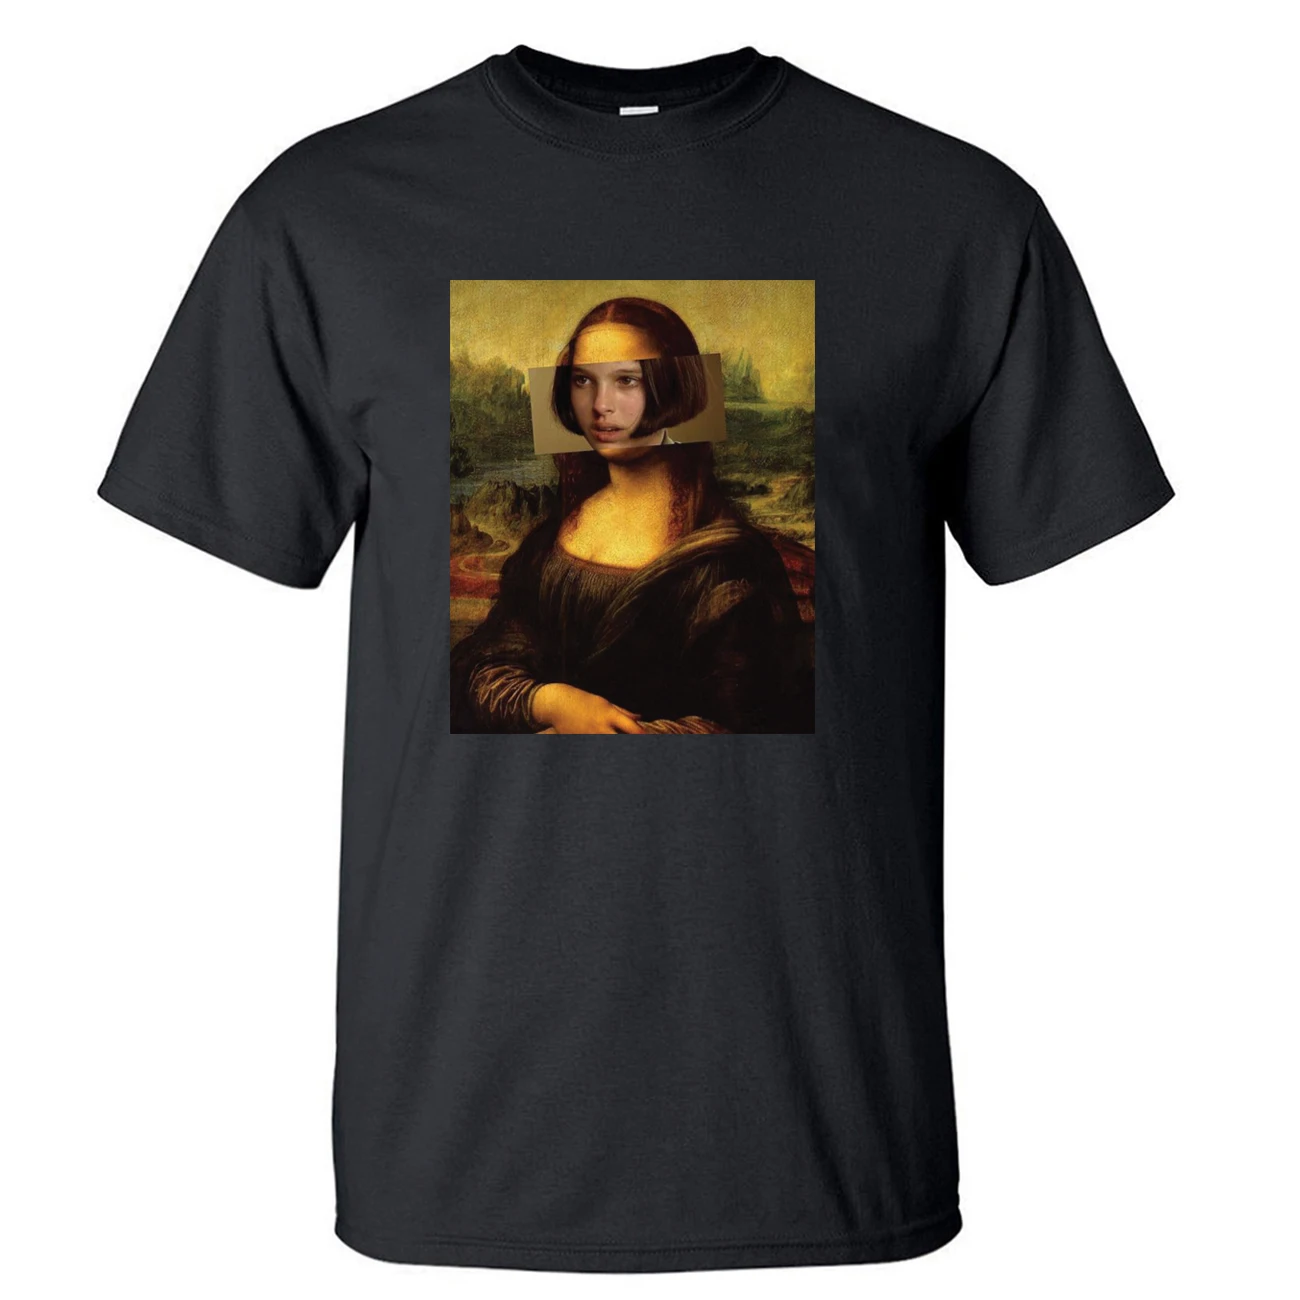 

Мужская футболка с принтом «Мона Лиза», черная или серая свободная футболка с коротким рукавом, из хлопка, в винтажном стиле, лето 2022